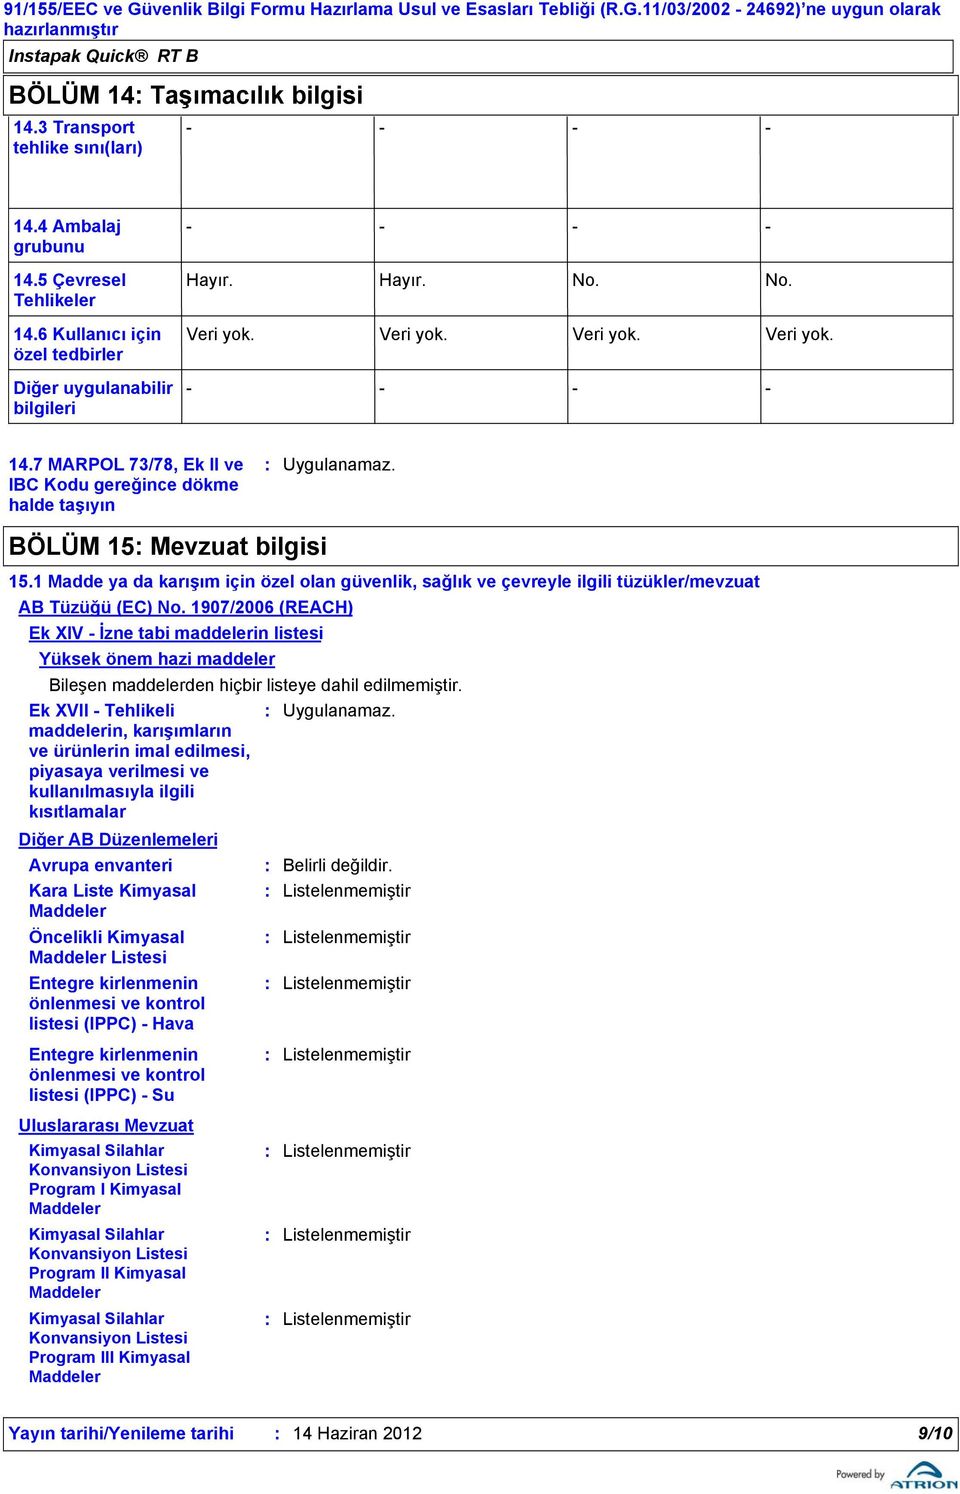 1907/2006 (REACH) Ek XIV İzne tabi maddelerin listesi Yüksek önem hazi maddeler Bileşen maddelerden hiçbir listeye dahil edilmemiştir.